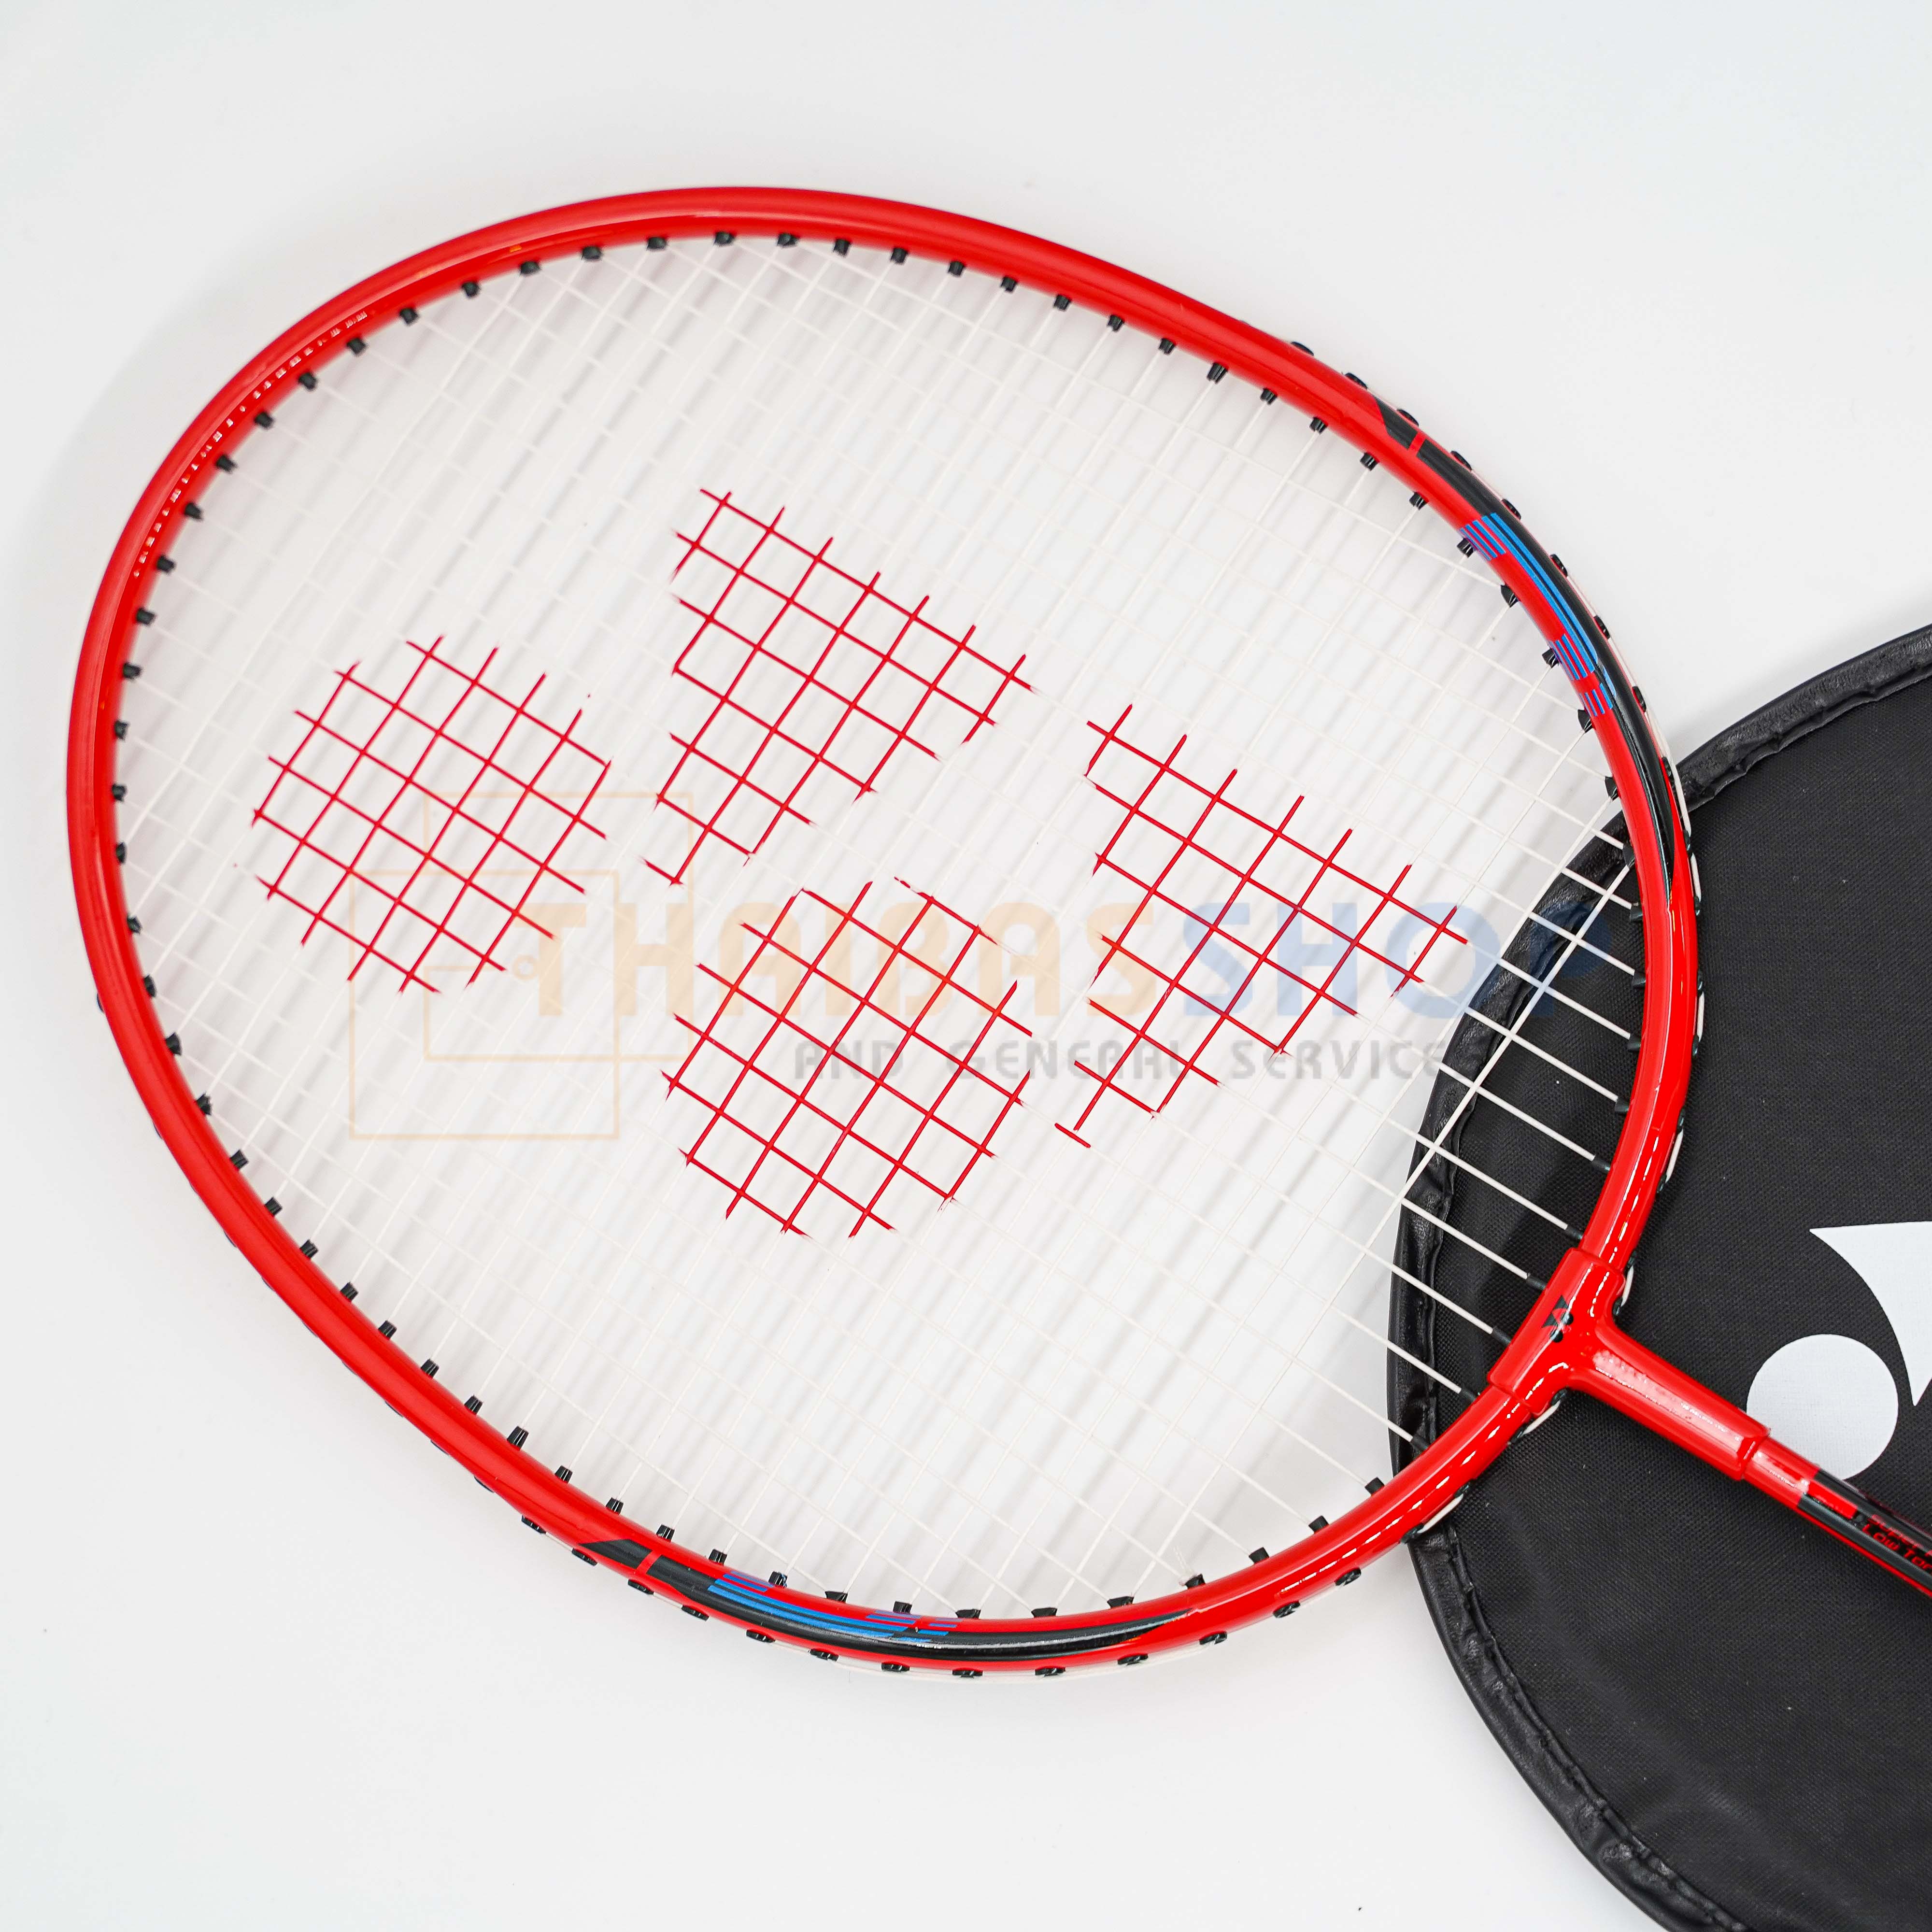 ข้อมูลเกี่ยวกับ Badminton racket badminton racket with envelope Yonex B4000 Badminton racket 100% genuine